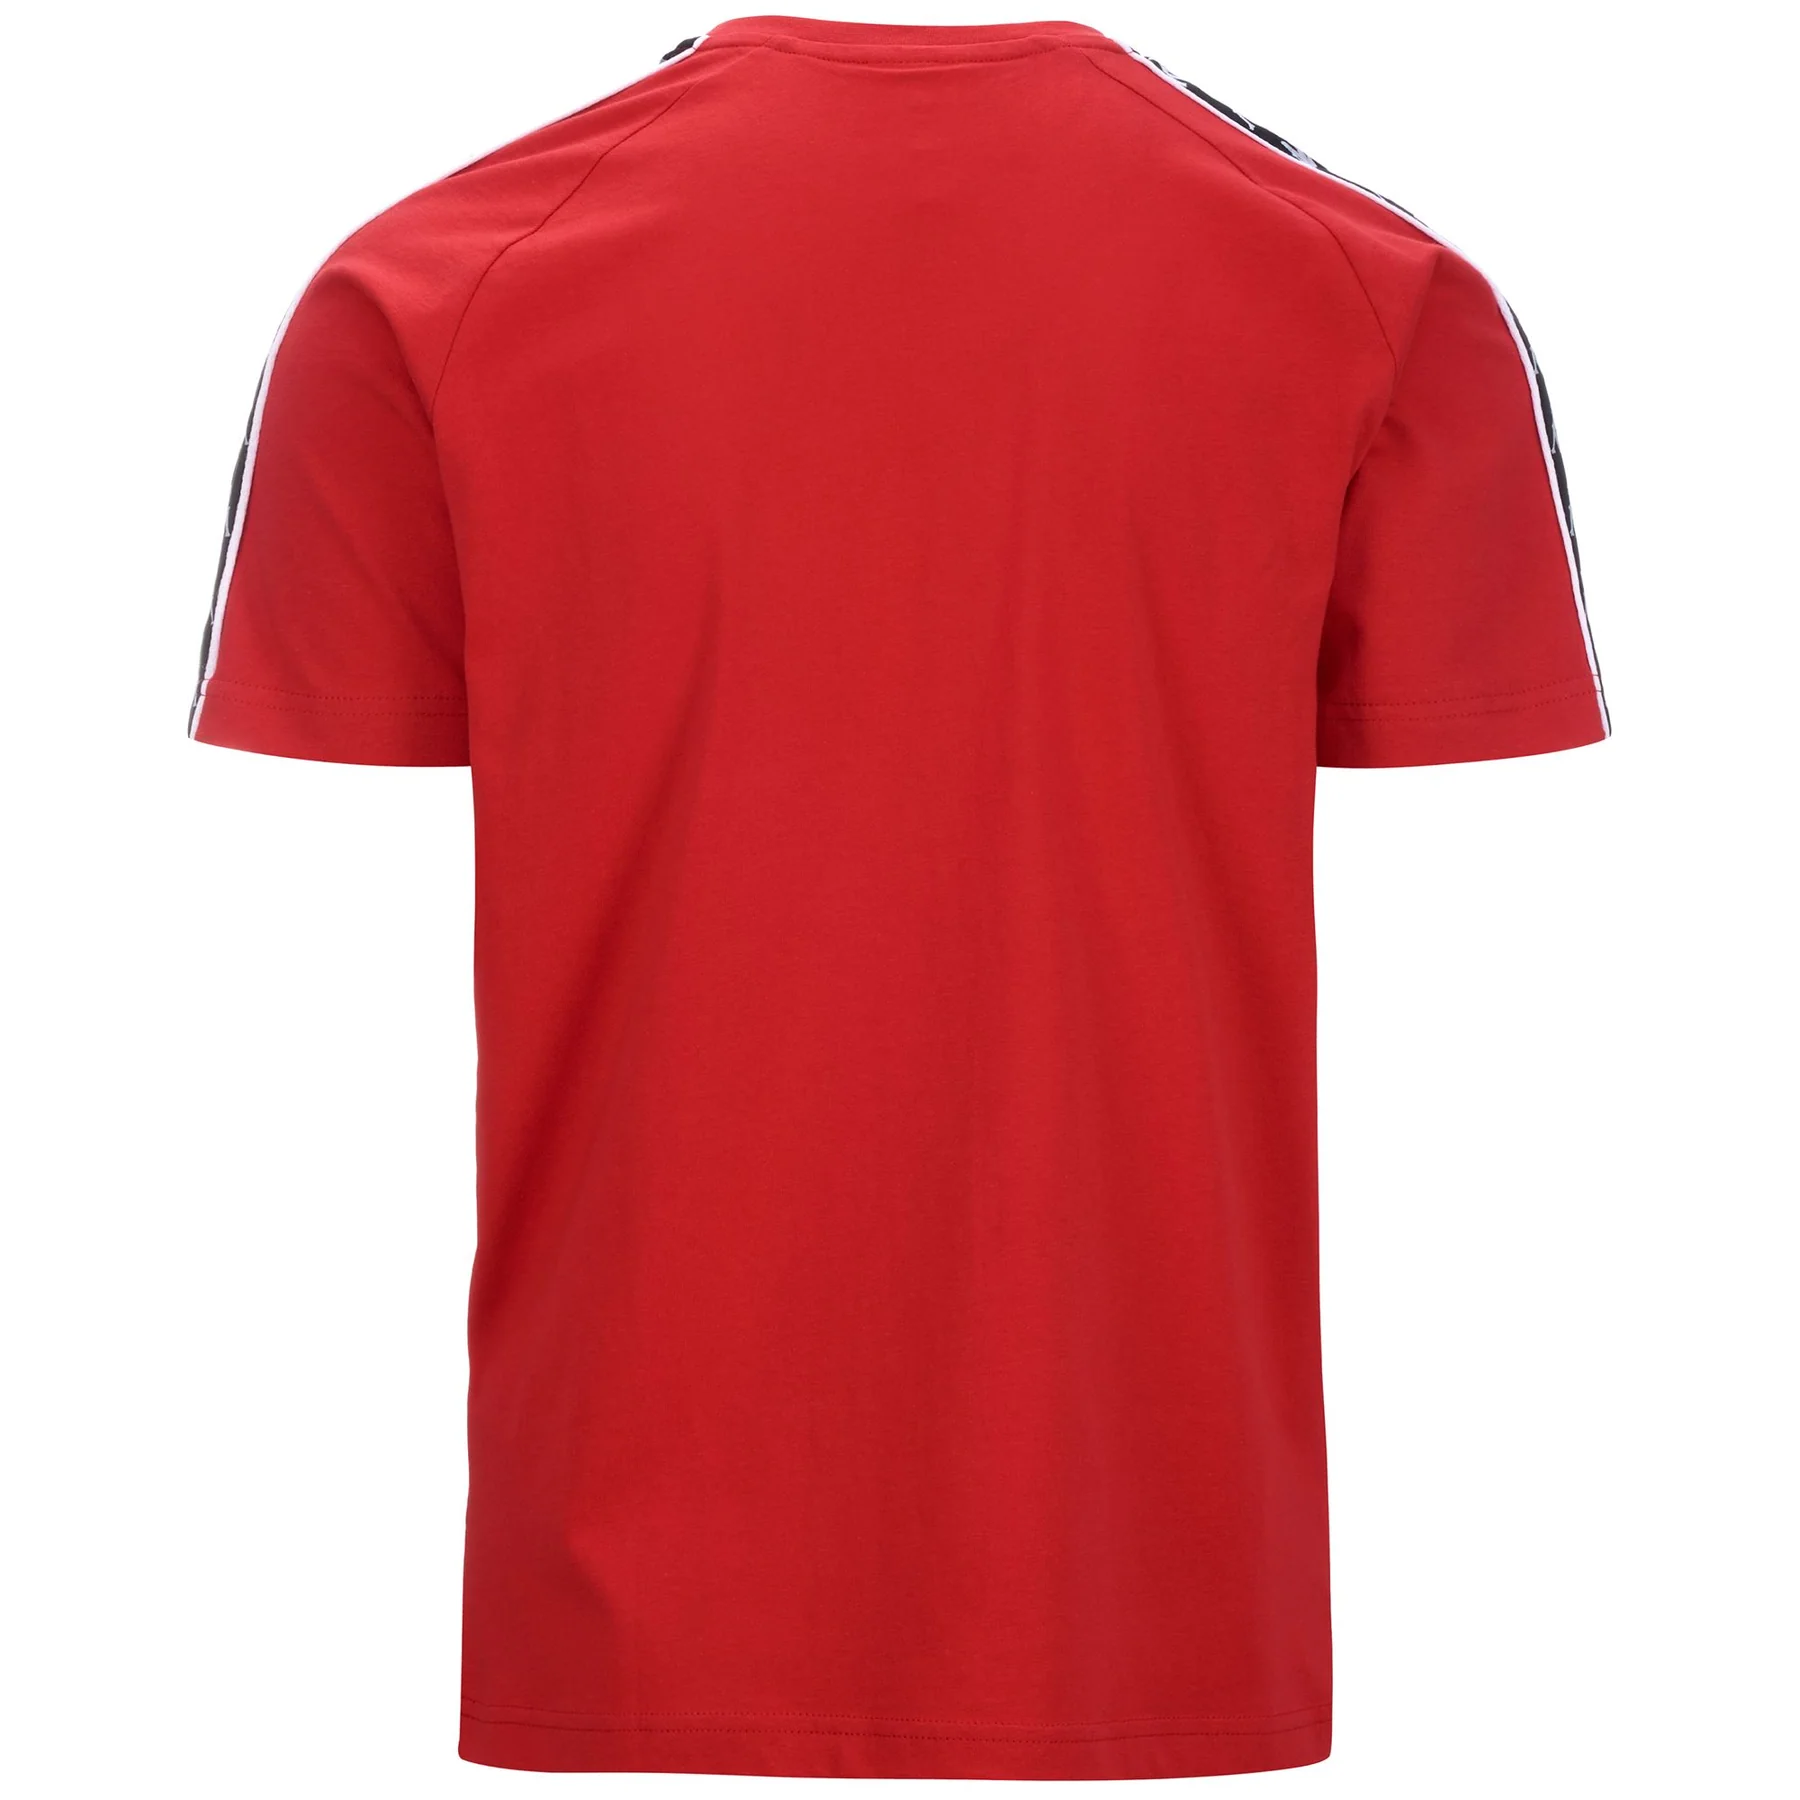 222 BANDA COEN SLIM tričko červená,černý pruh,bílé logo a proužek